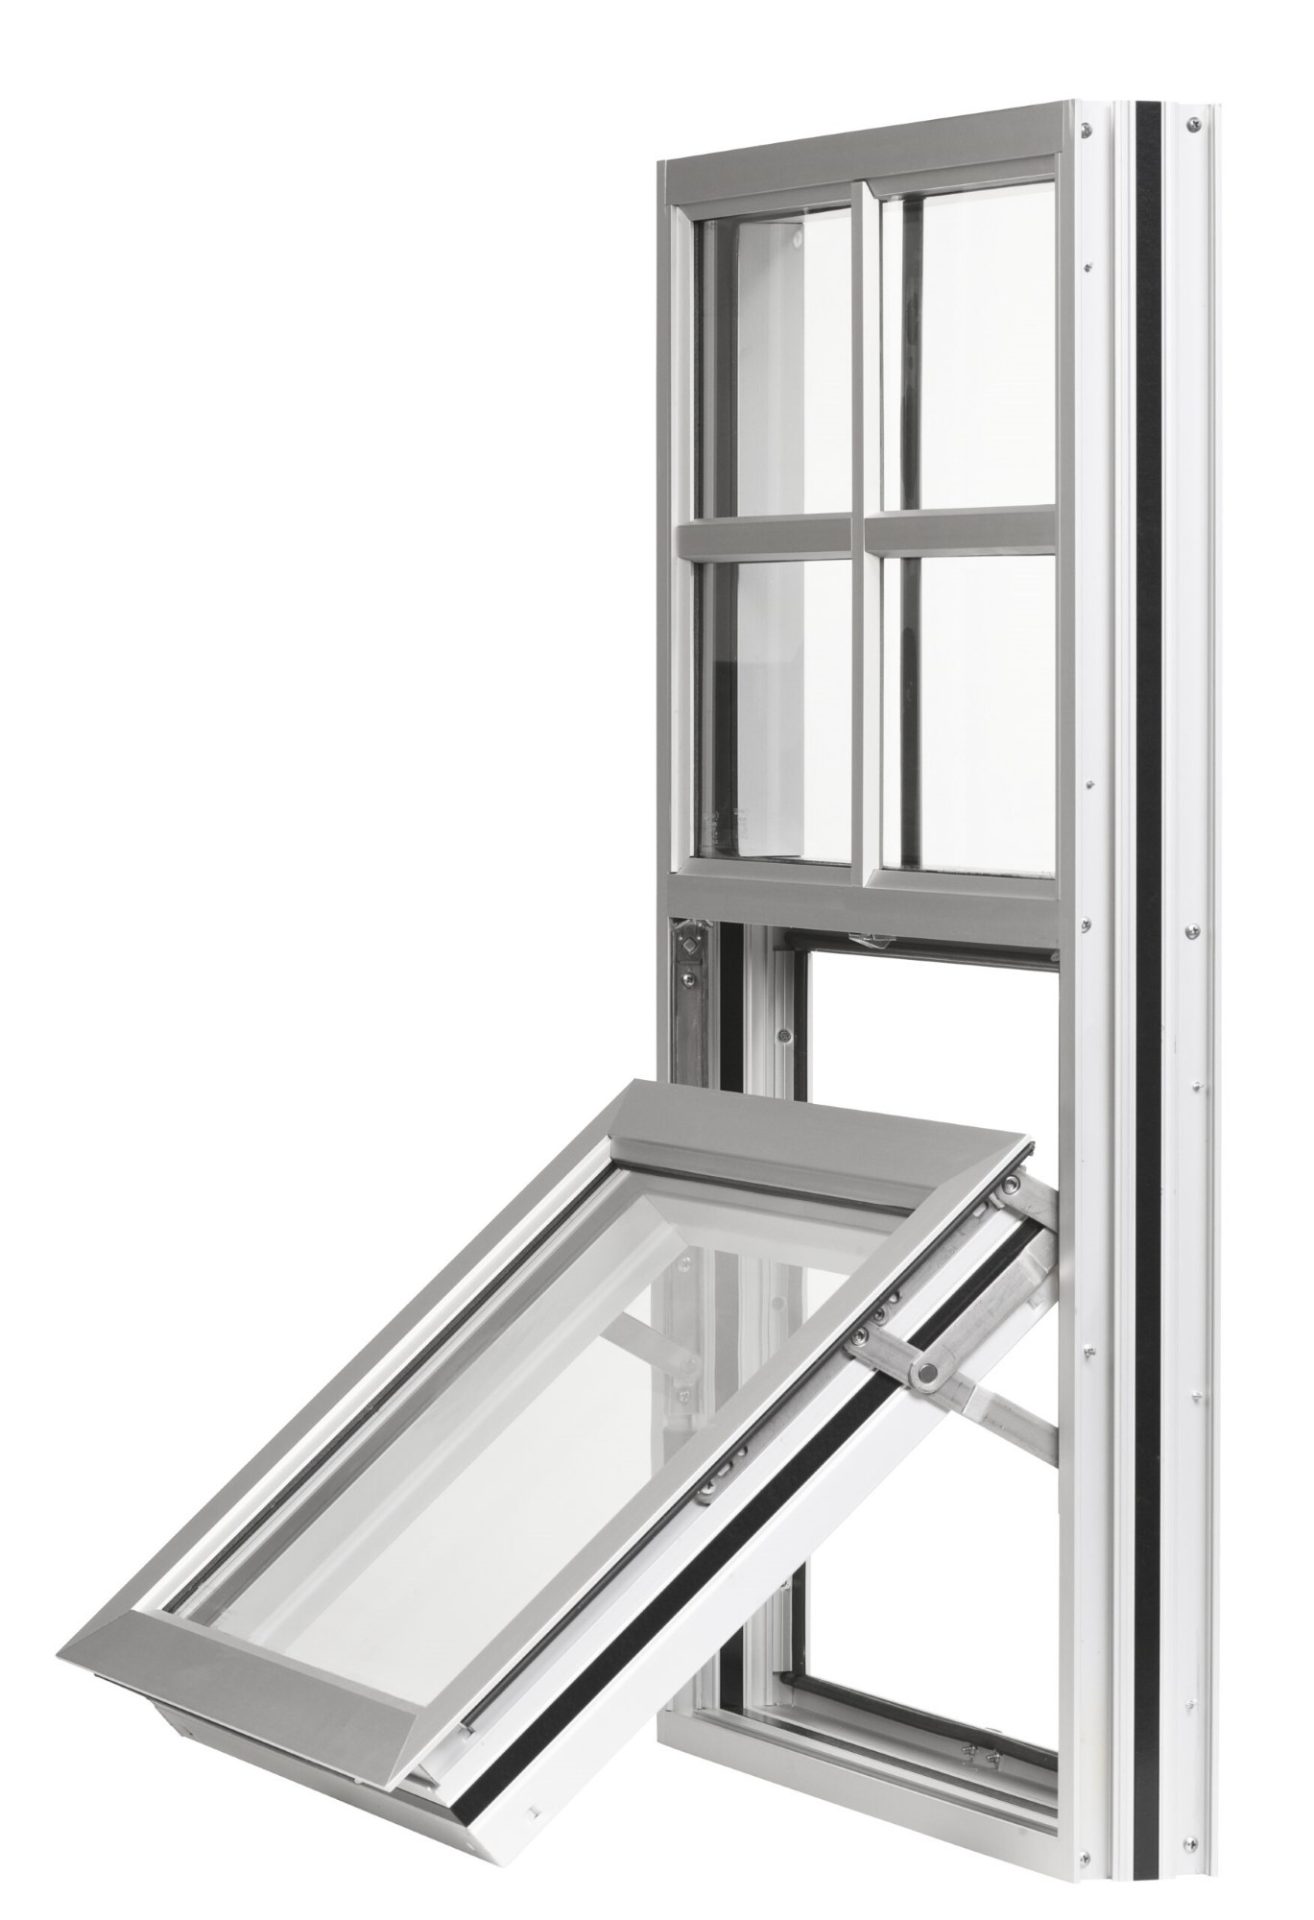 NX-300 Series Thermal Windows - Kawneer Window Solutions